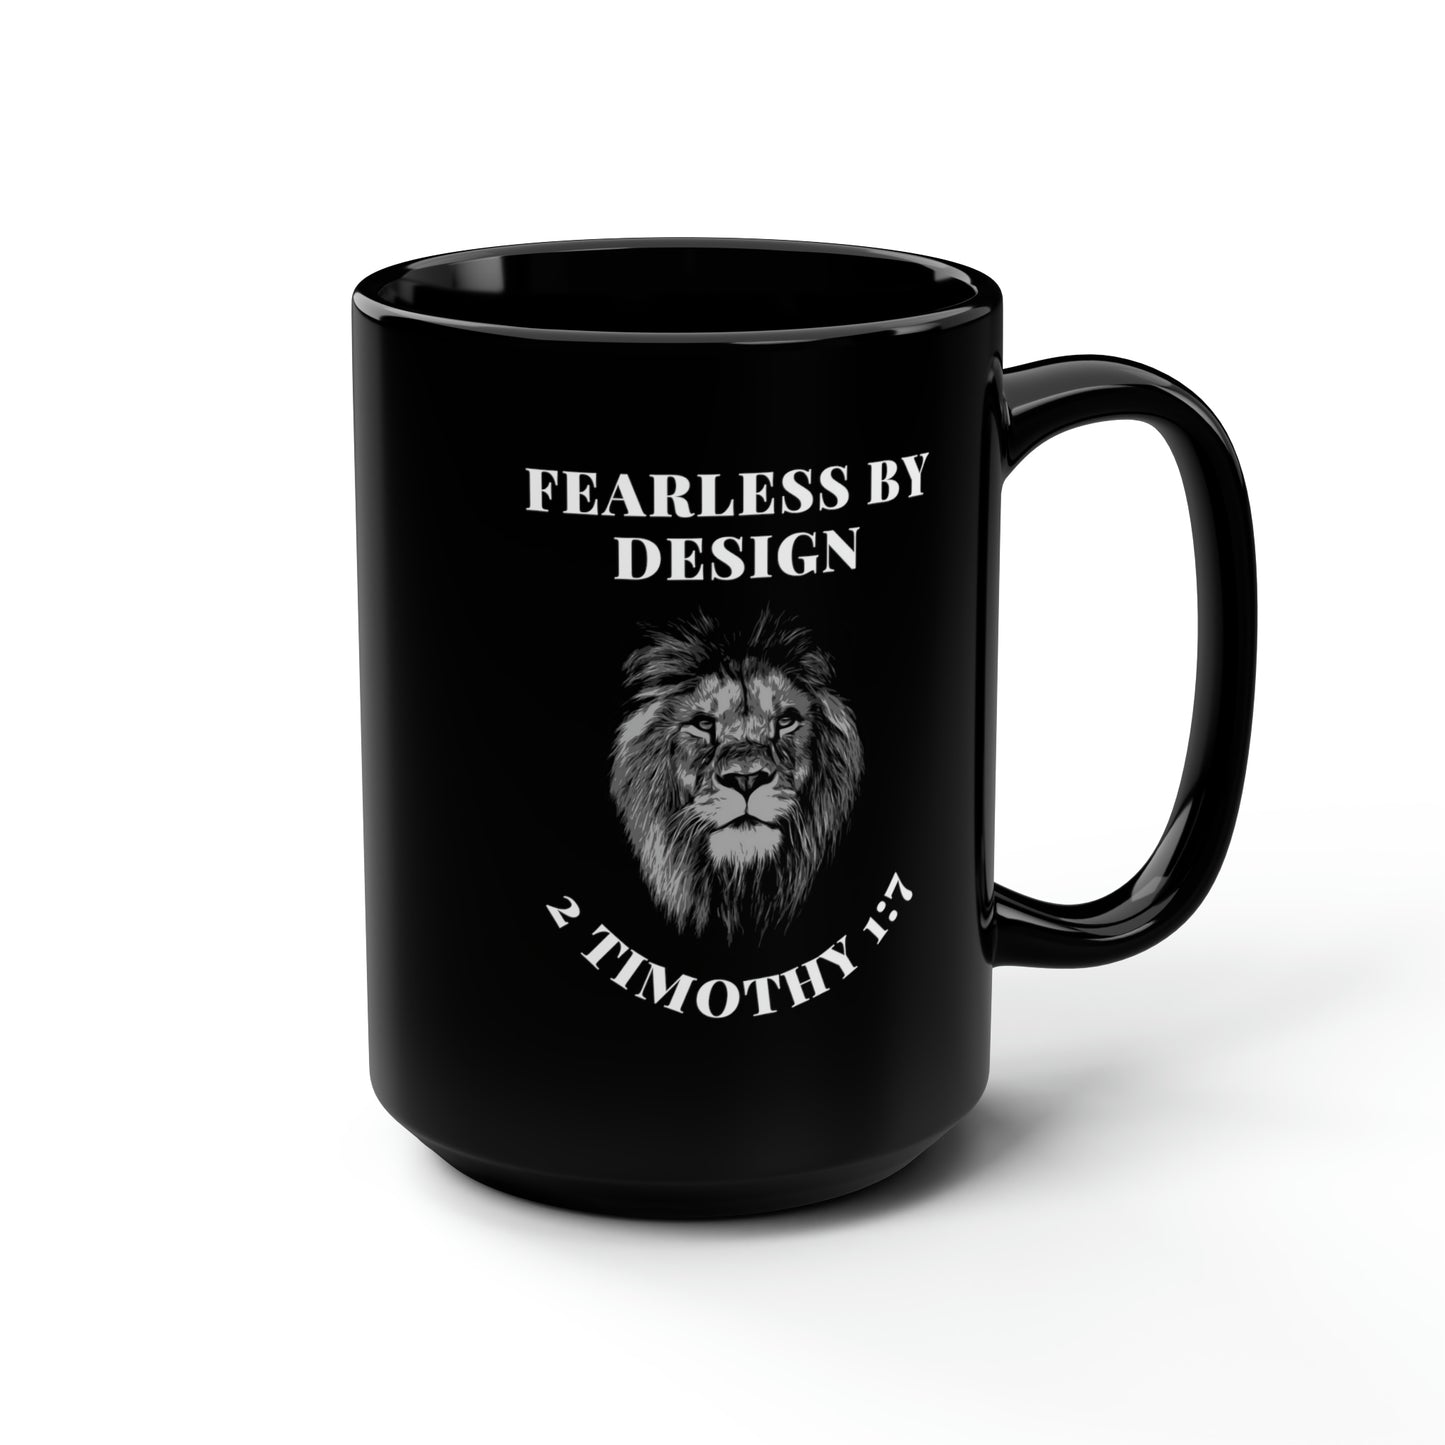 Fearless By Design, Black Mug, 15oz. Left-Handed